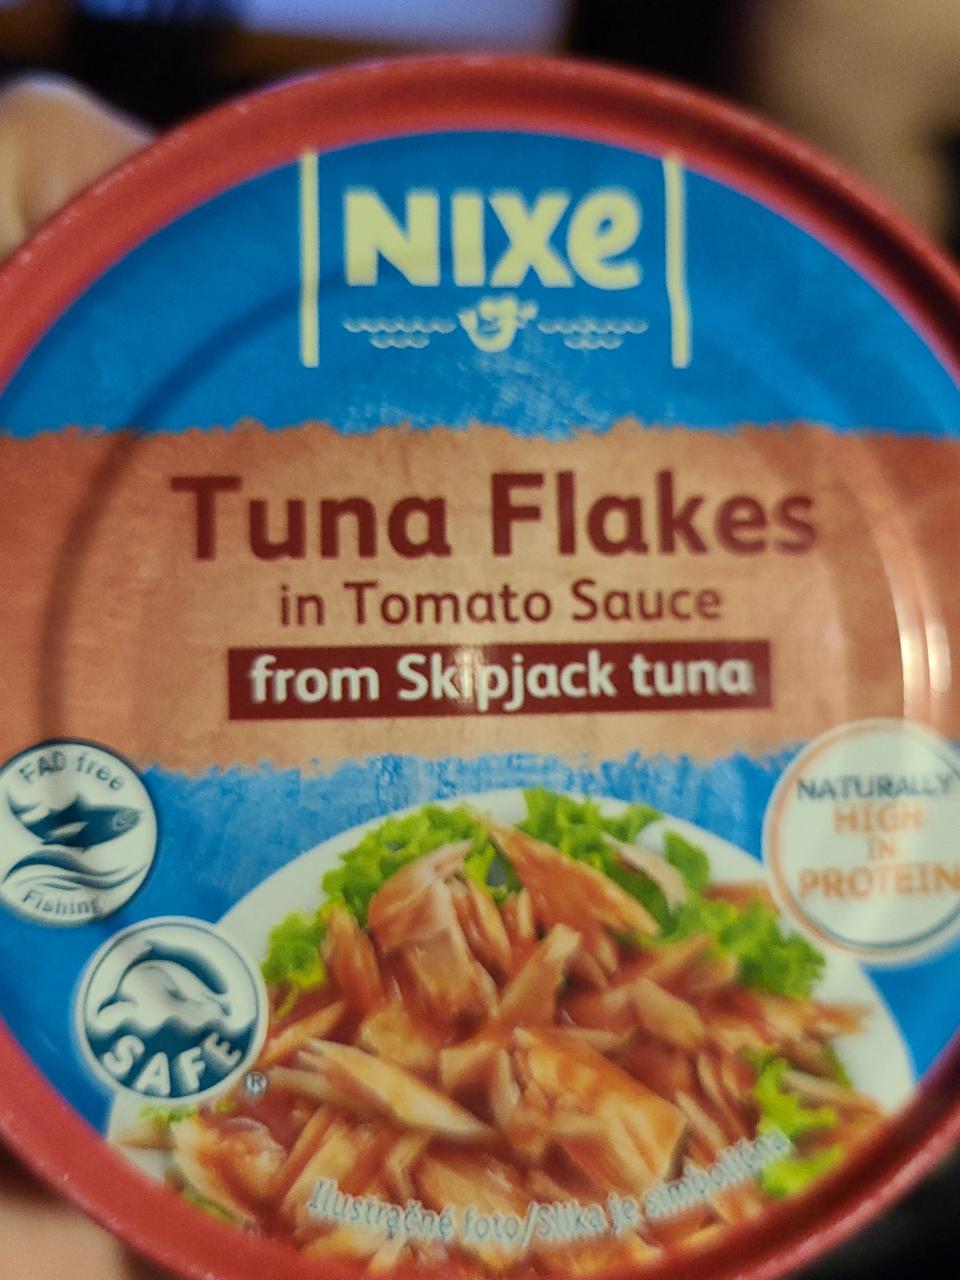 Fotografie - Tuna flakes in Tomato Sauce from Skipjack tuna Nixe